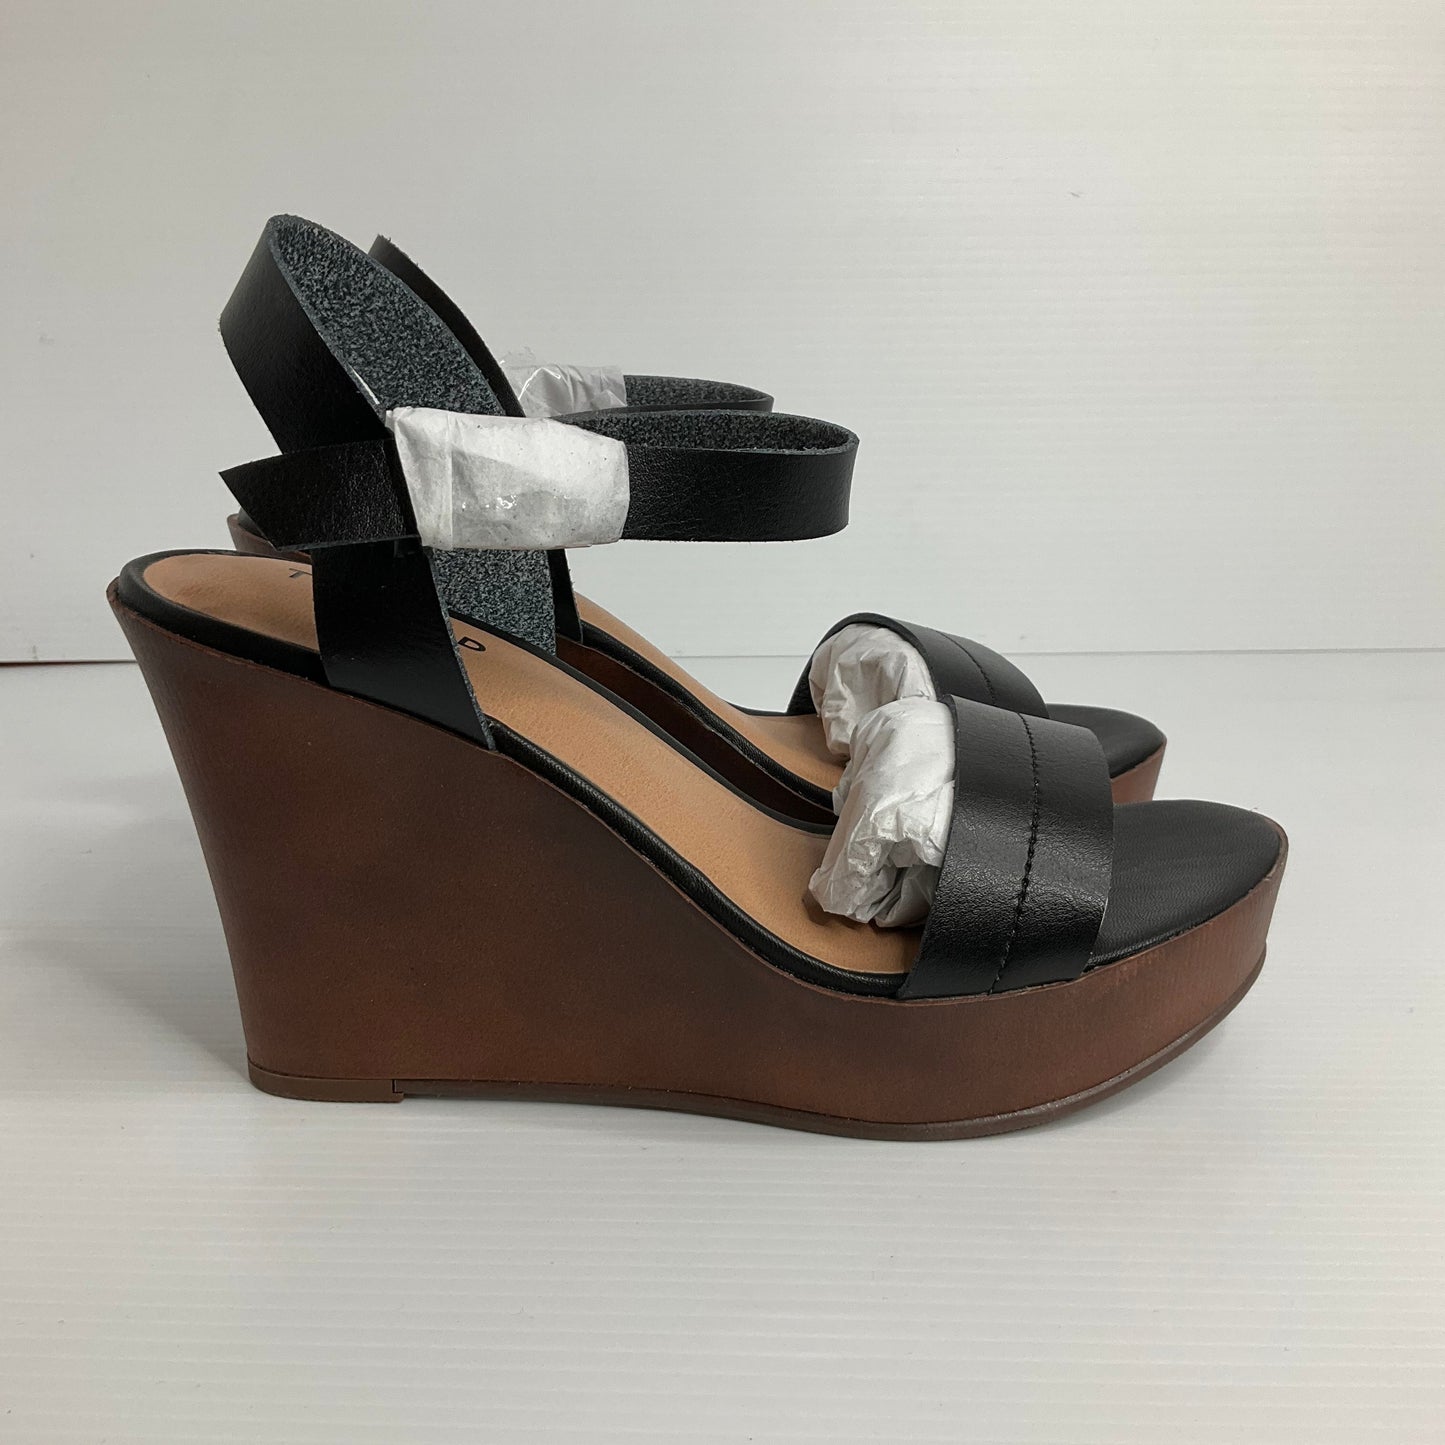 Black & Brown Sandals Heels Wedge Torrid, Size 8